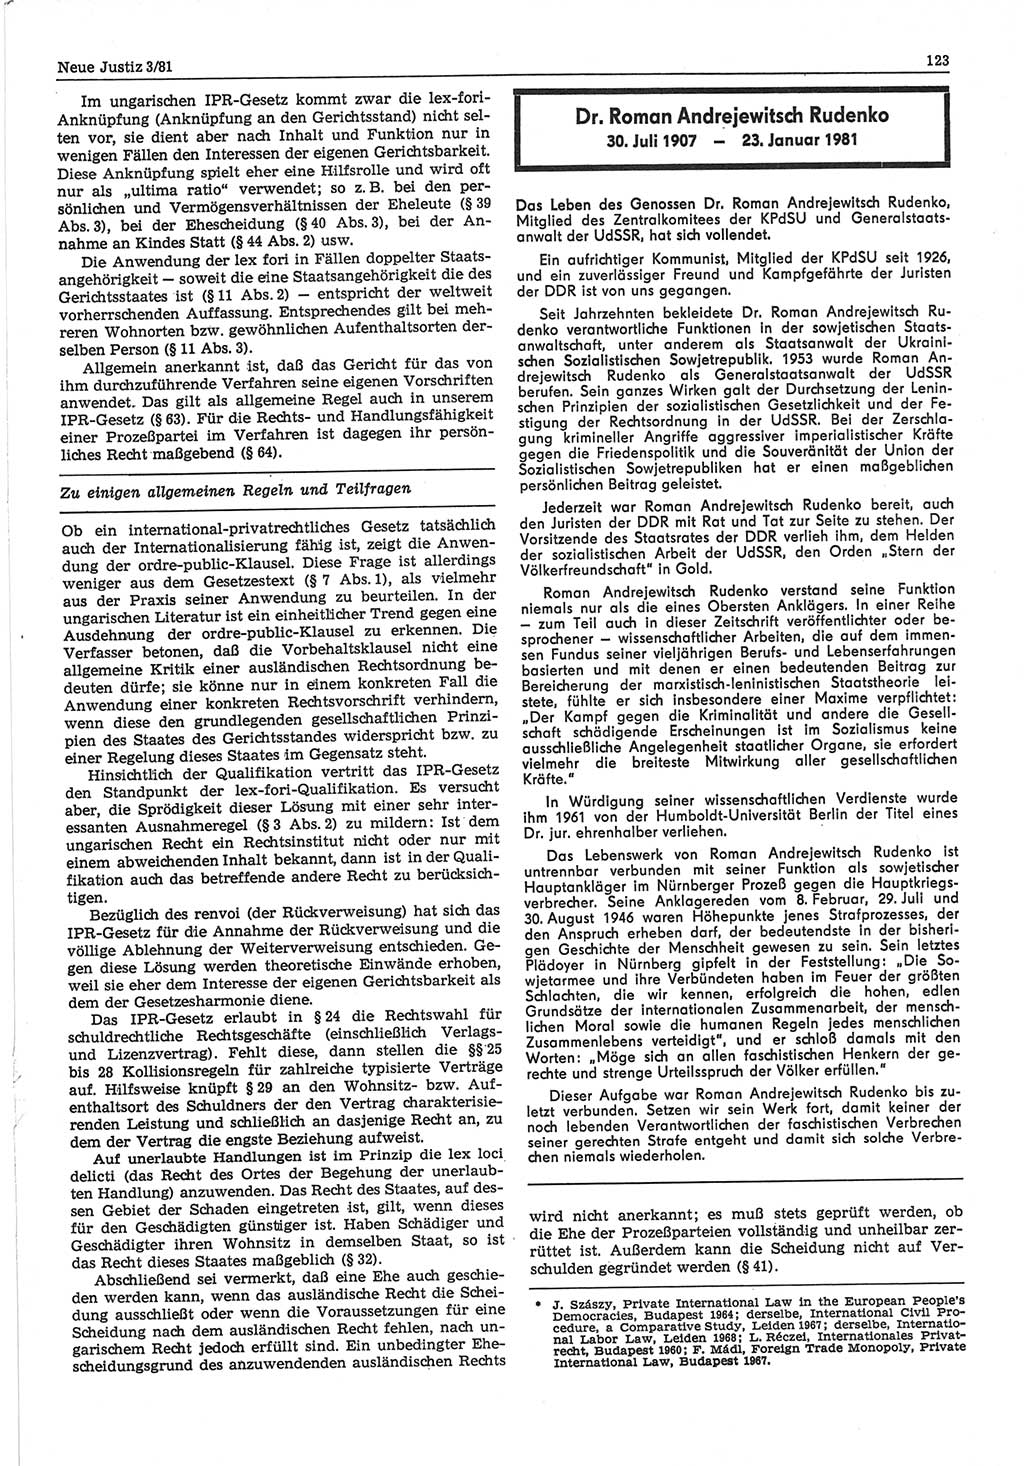 Neue Justiz (NJ), Zeitschrift für sozialistisches Recht und Gesetzlichkeit [Deutsche Demokratische Republik (DDR)], 35. Jahrgang 1981, Seite 123 (NJ DDR 1981, S. 123)